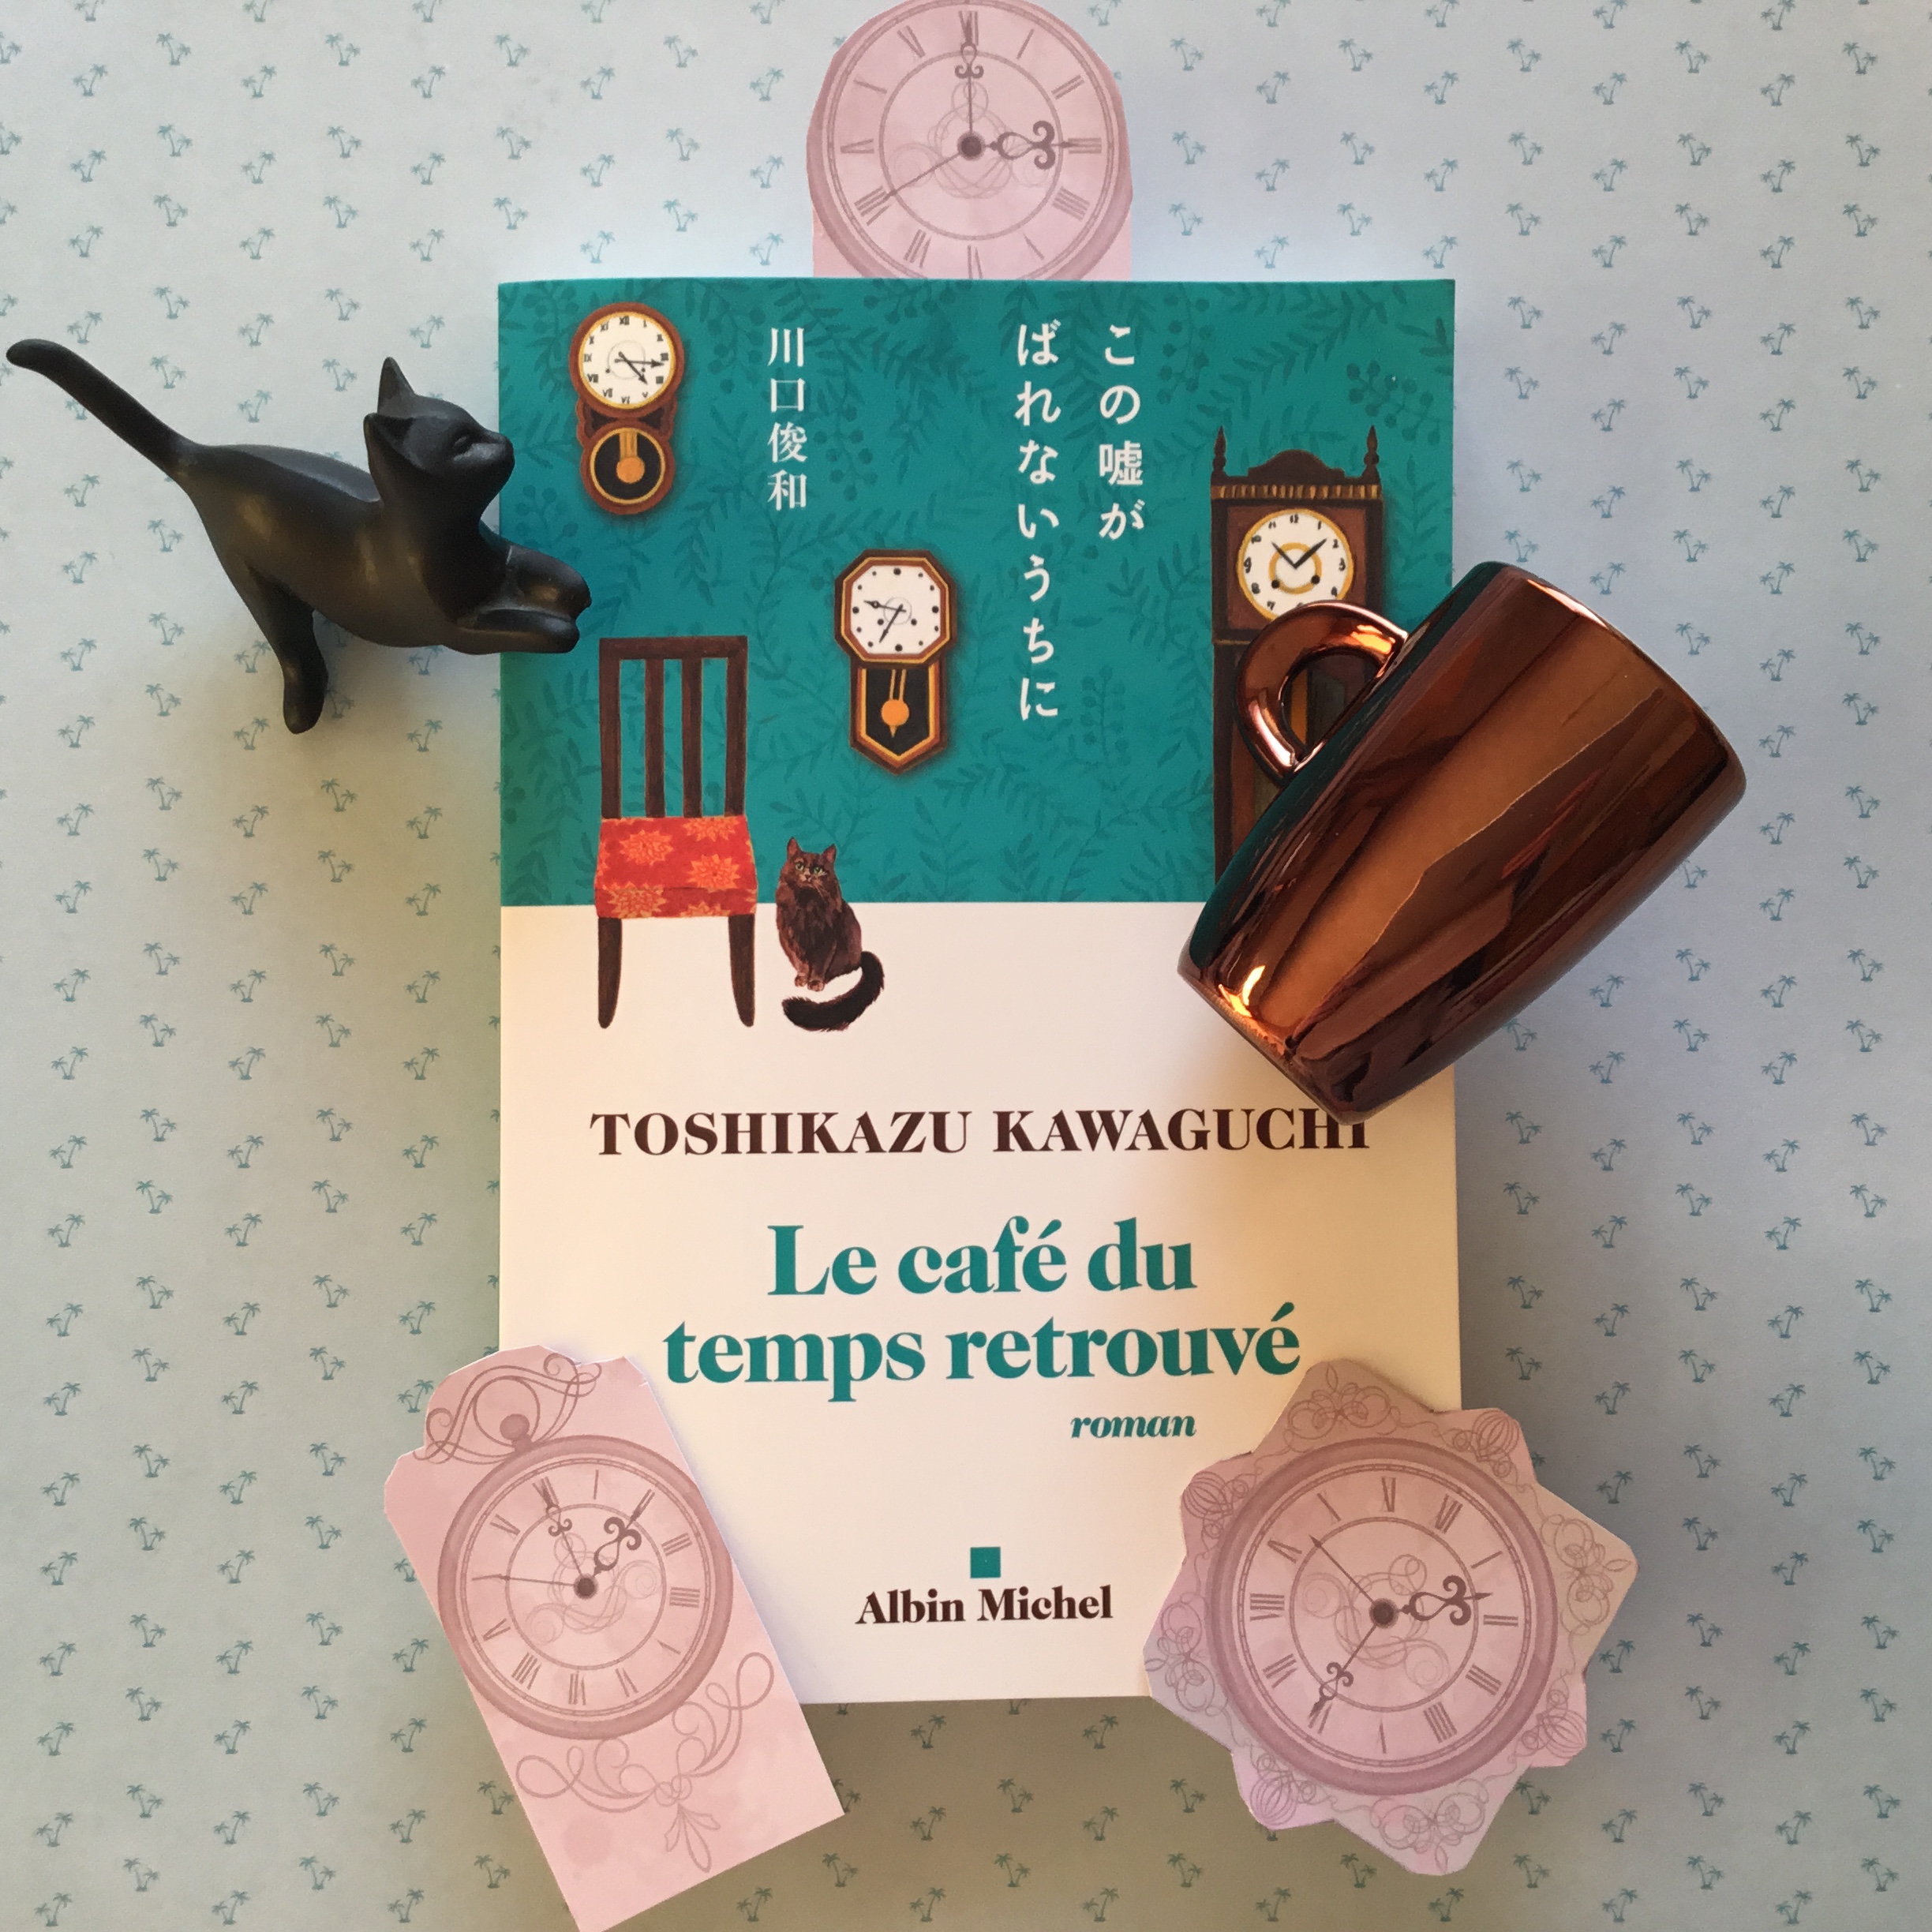  Le cafe du temps retrouve - Kawaguchi Toshikazu - lettres et  linguistique - Livres pas cher - Neuf et Occasion